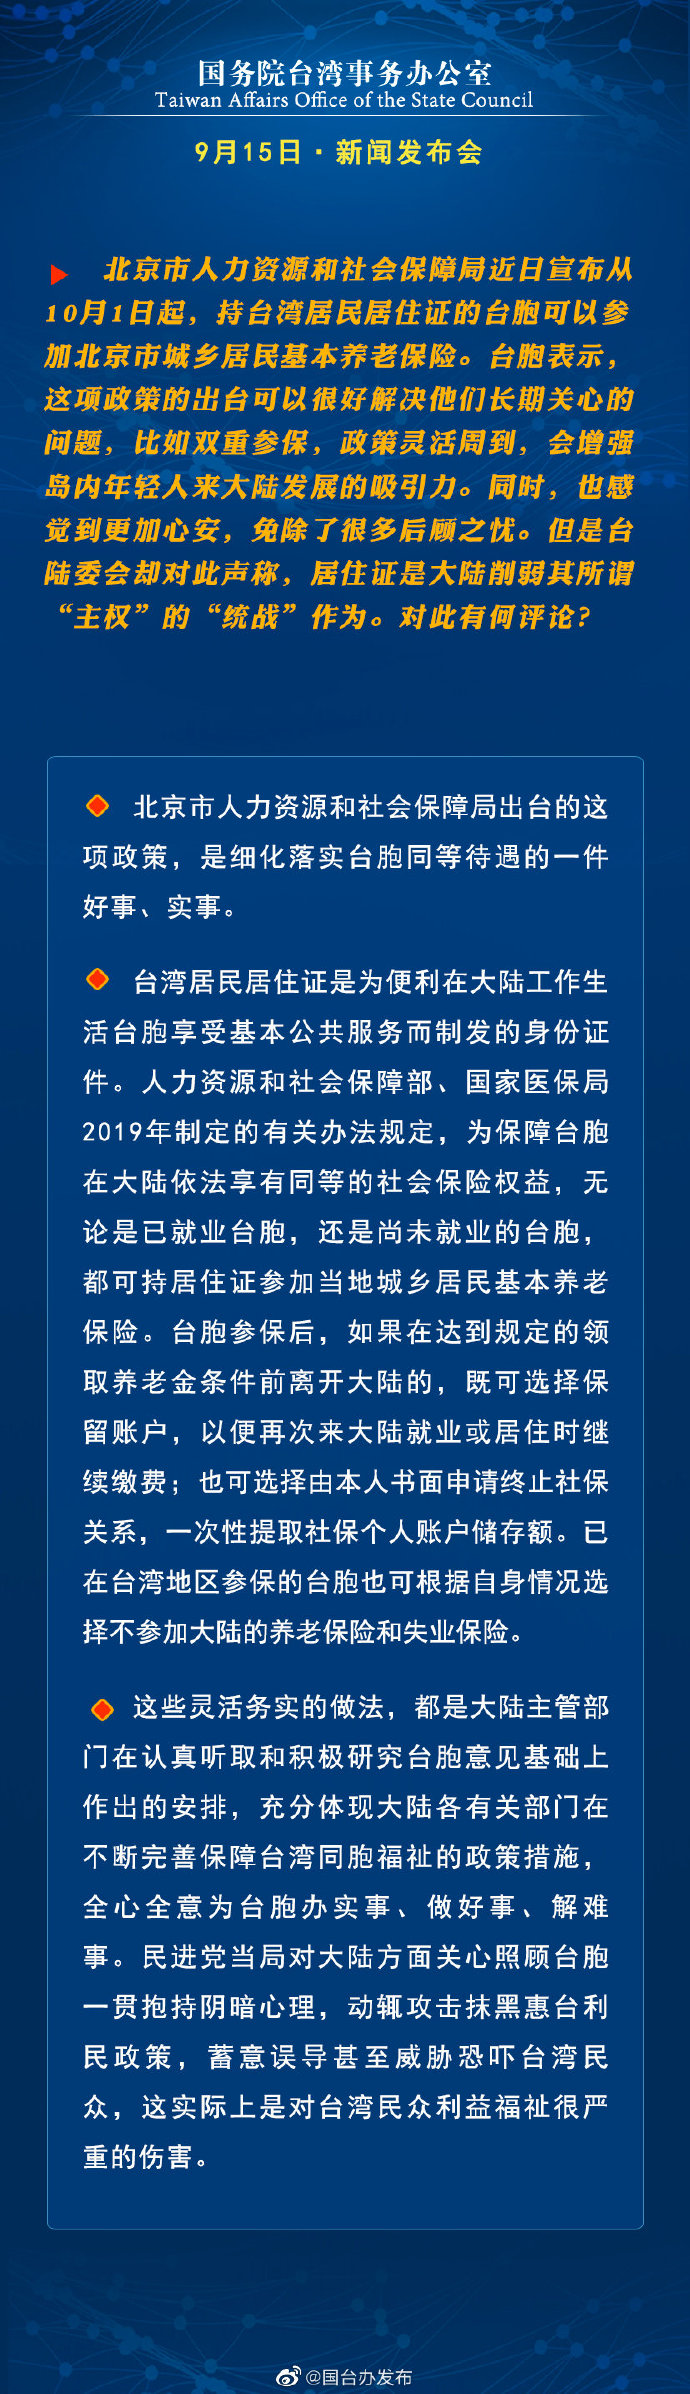 国务院台湾事务办公室9月15日·新闻发布会